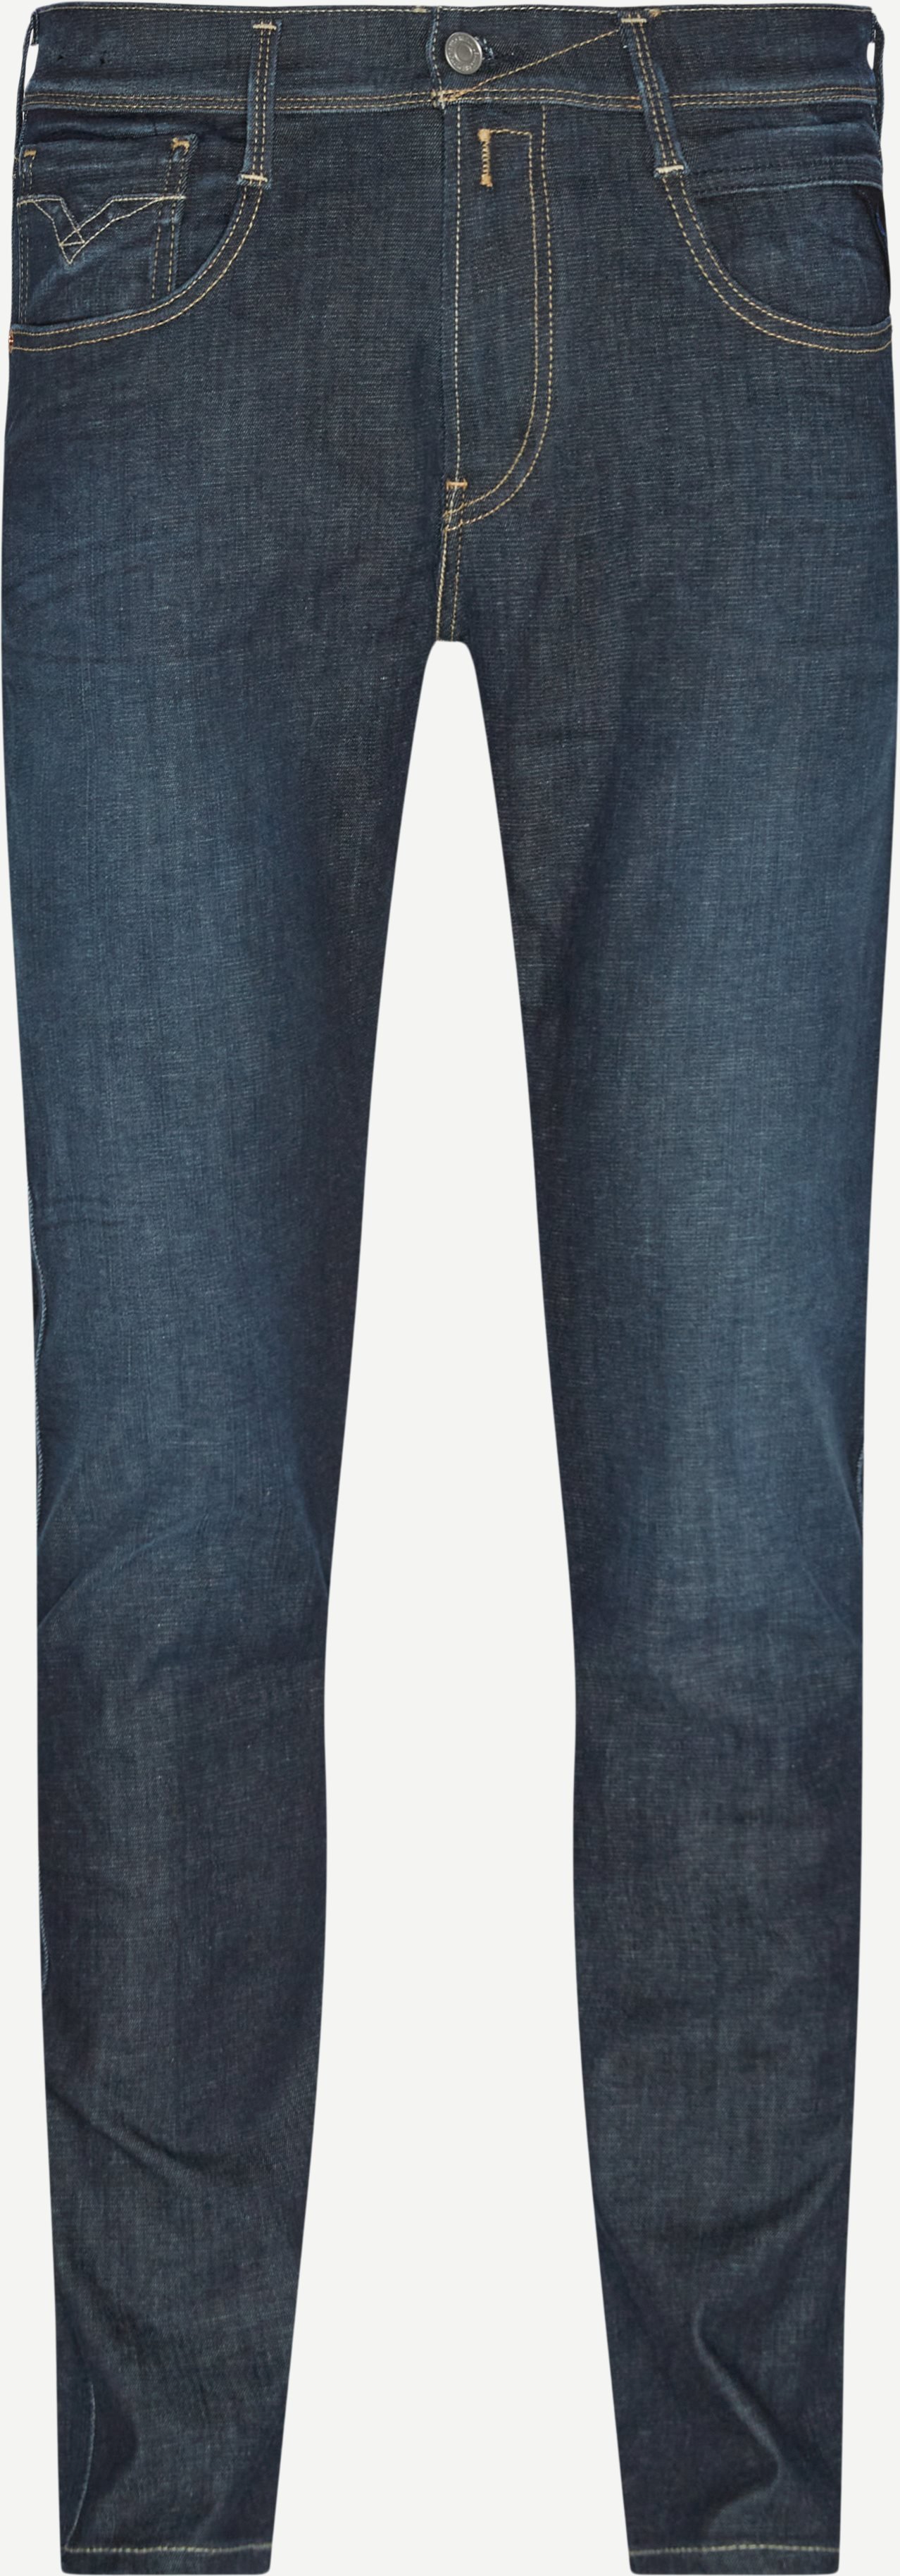 661 RI10 Anbass Hyperflex Jeans - Jeans - Slim fit - Denim